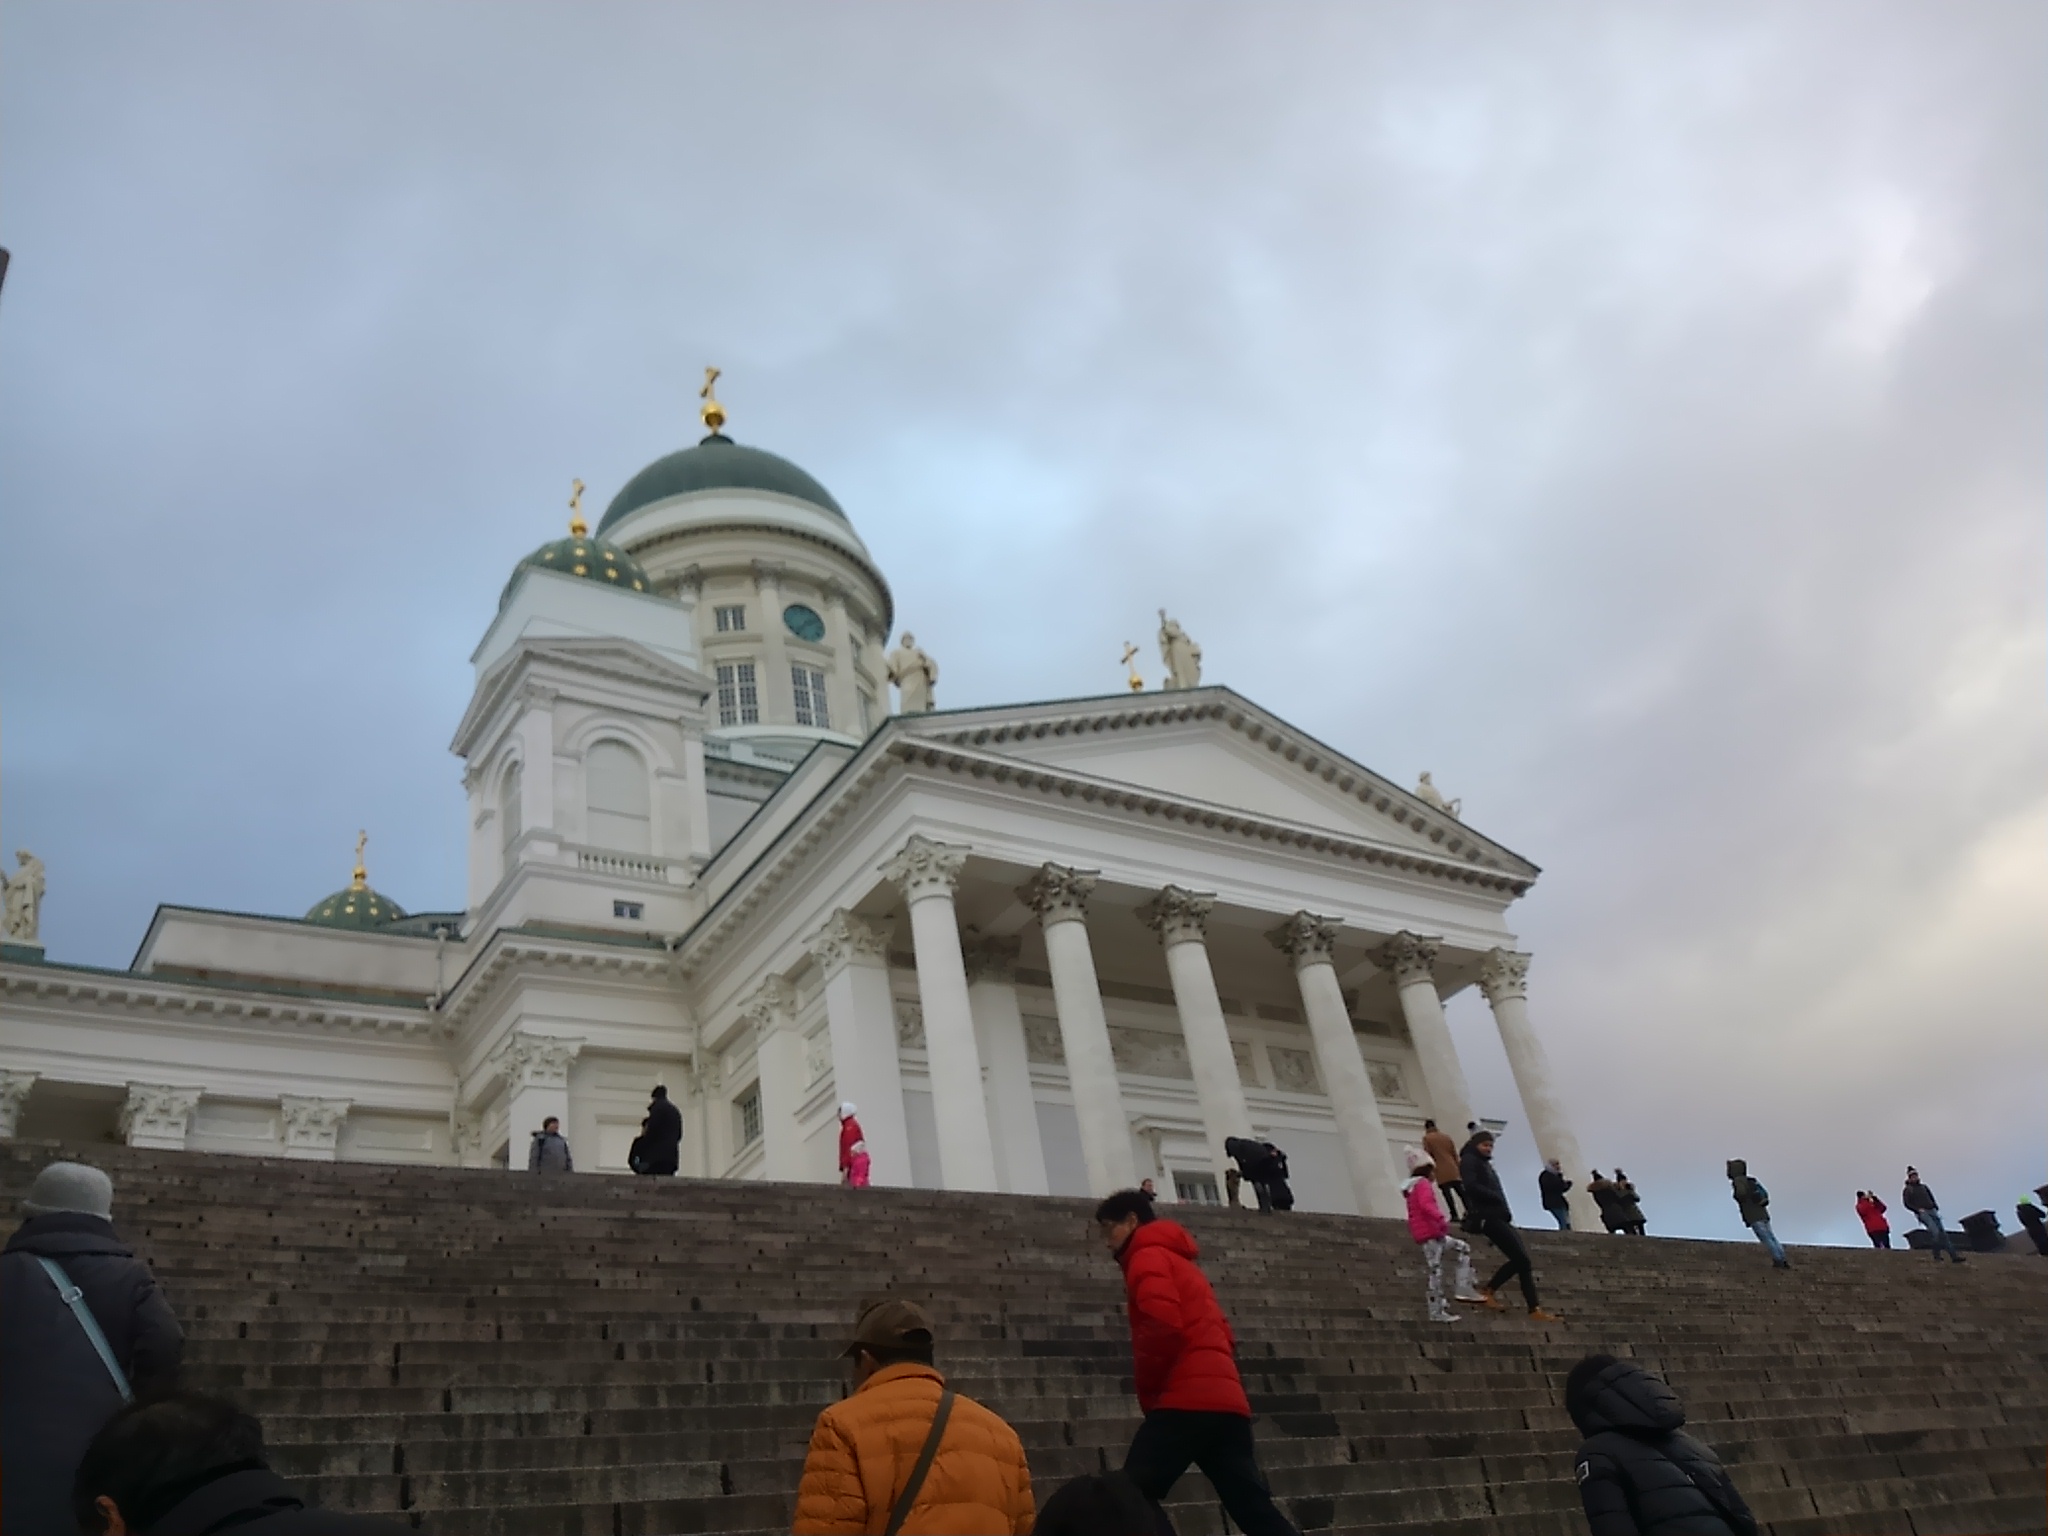 ヘルシンキ大聖堂へはこの高い階段をしっかり登らないといけない。